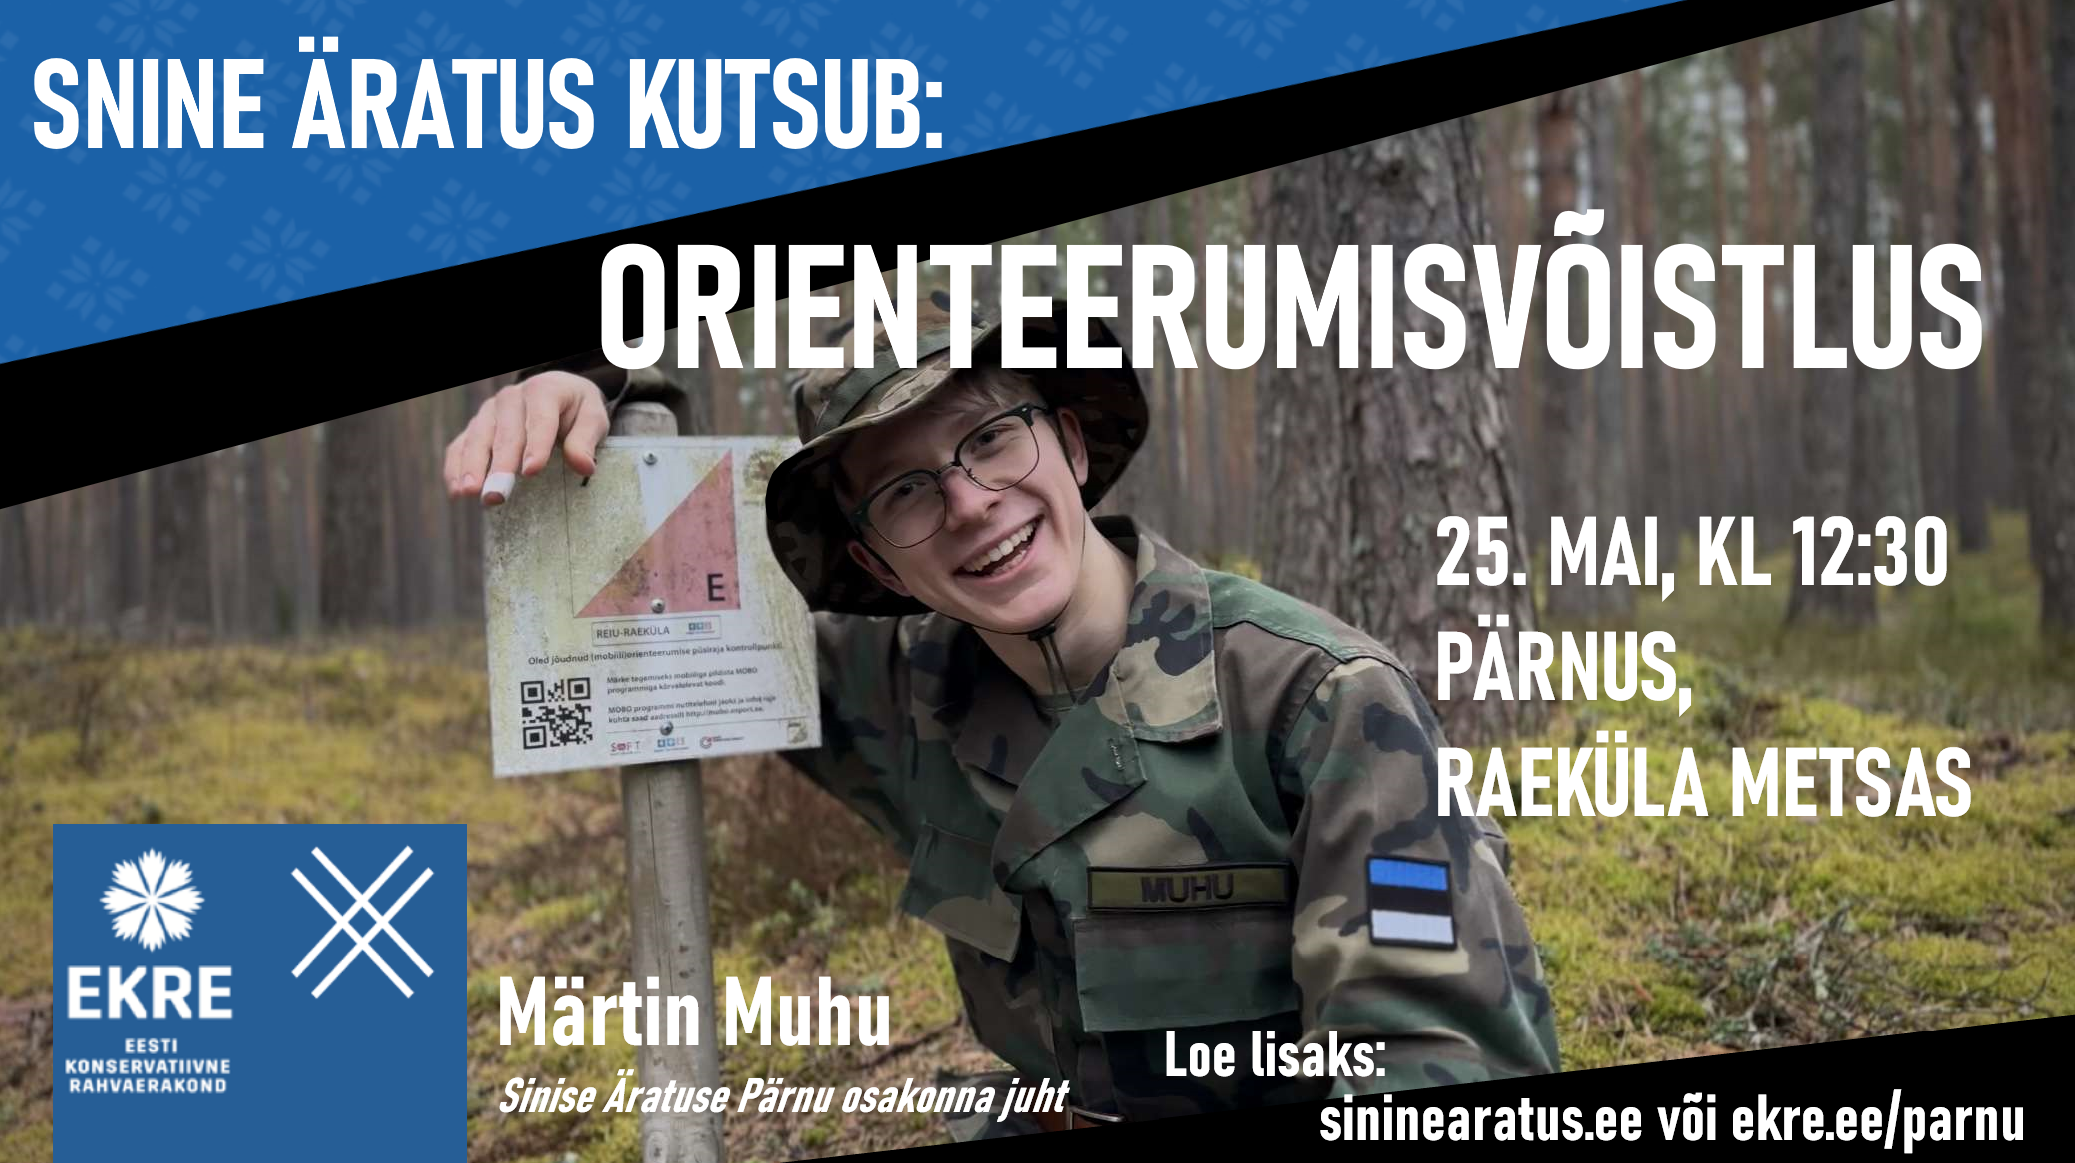 Sinise Äratuse Pärnu osakond korraldab 25. mail Pärnus Raeküla metsas meeleoluka ja toreda orienteerumisvõistluse. Veeda maikuu viimane laupäev põneval orientee